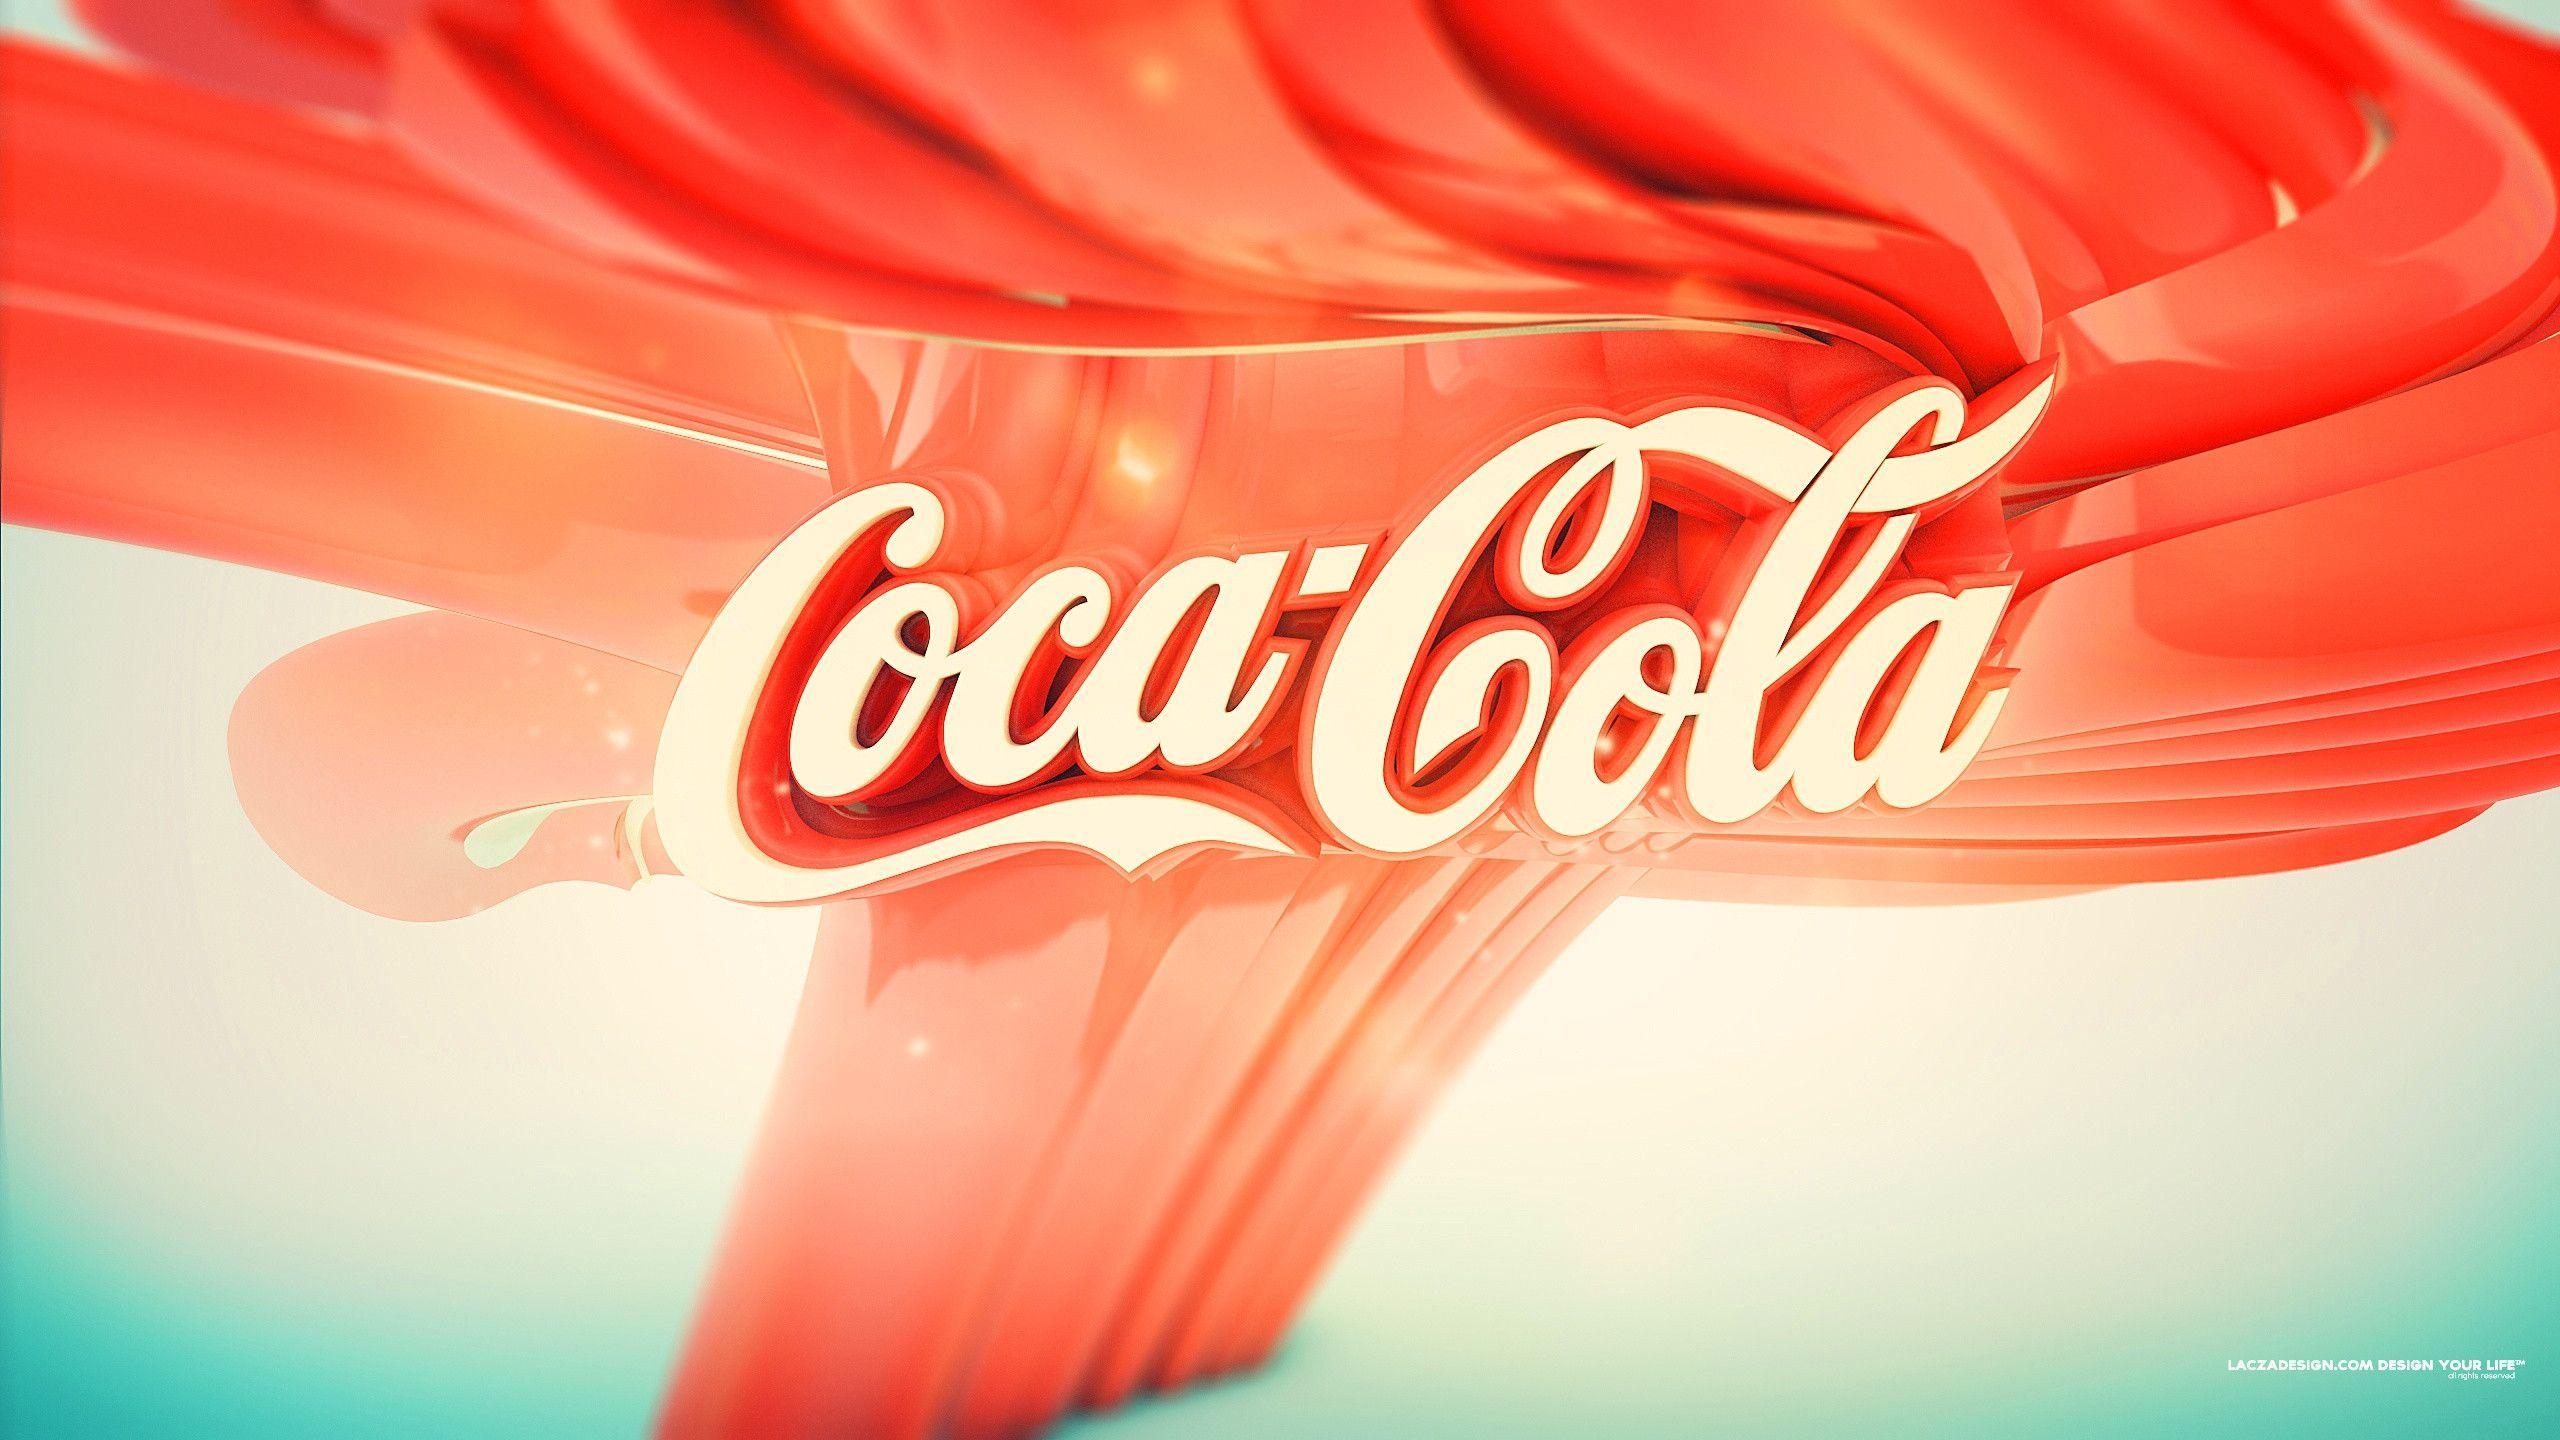 Coca cola artwork Wallpaper